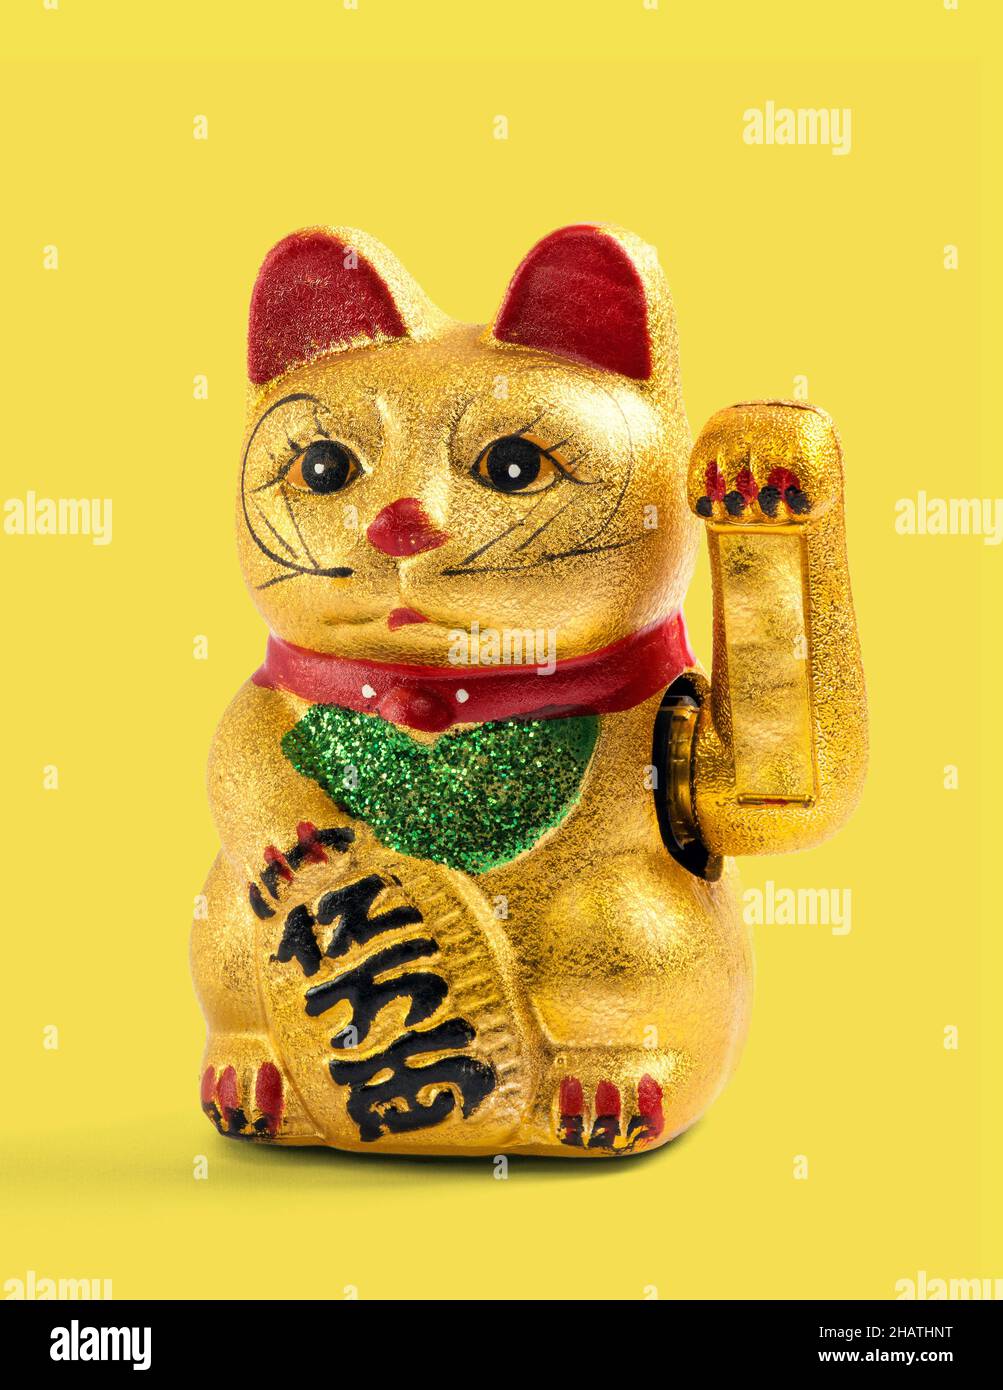 Gato dorado chino, asiático o Feng Shui encanto afortunado con una pata levantada en el saludo que denota riqueza y prosperidad sobre un fondo amarillo Foto de stock